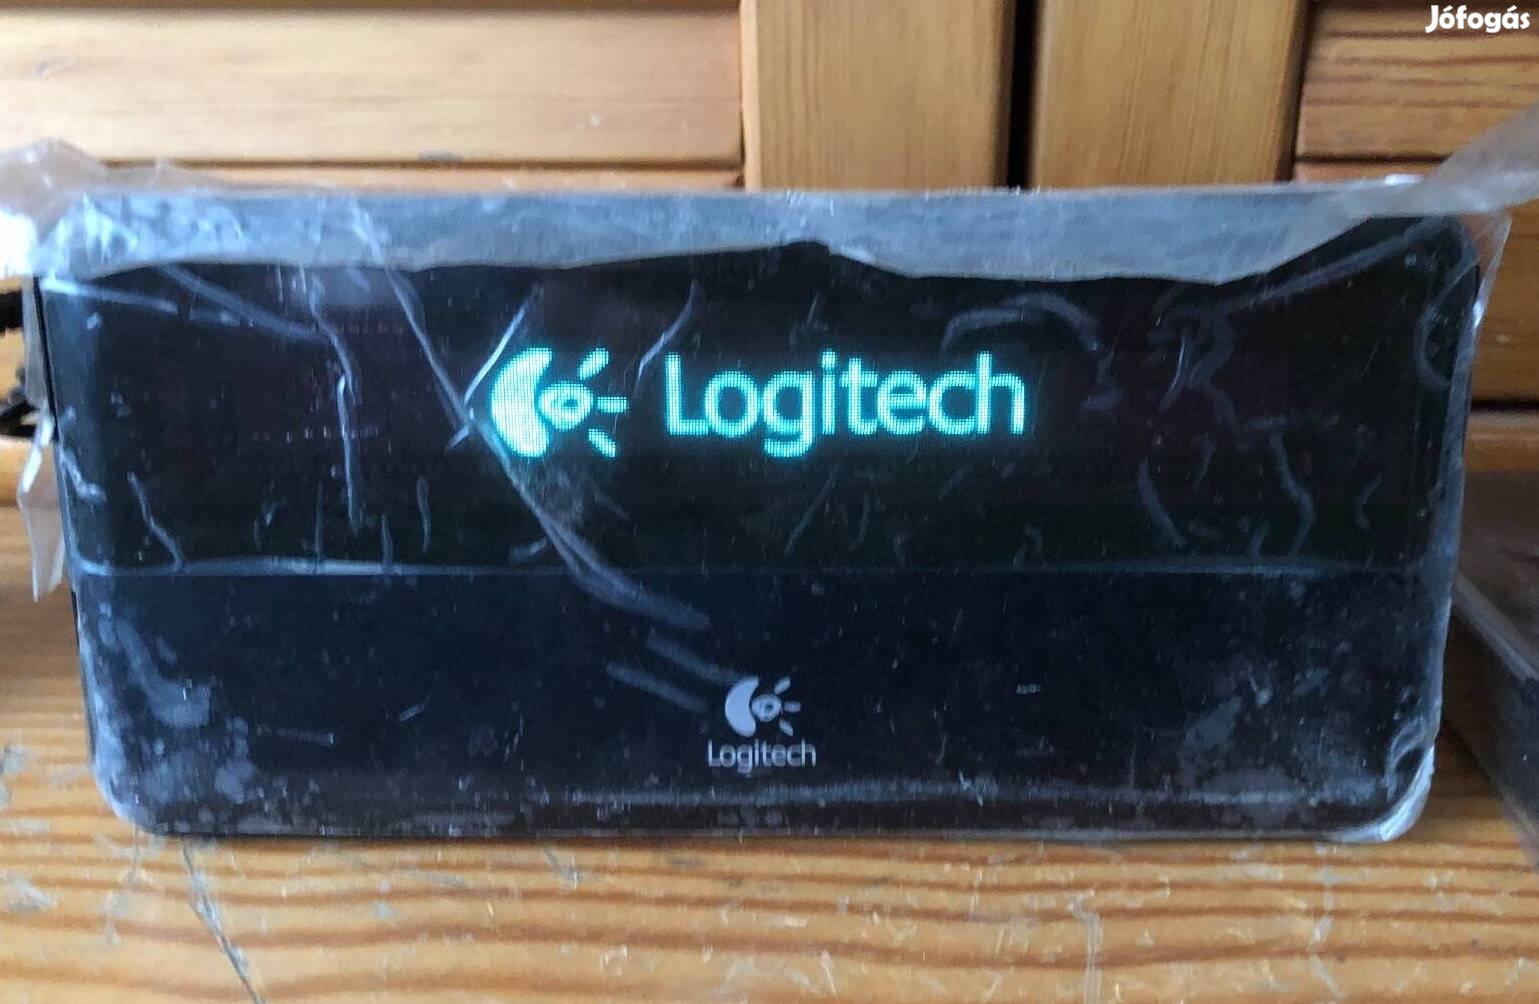 Logitech Squeezebox Classic hálózati zenelejátszó dobozában eladó